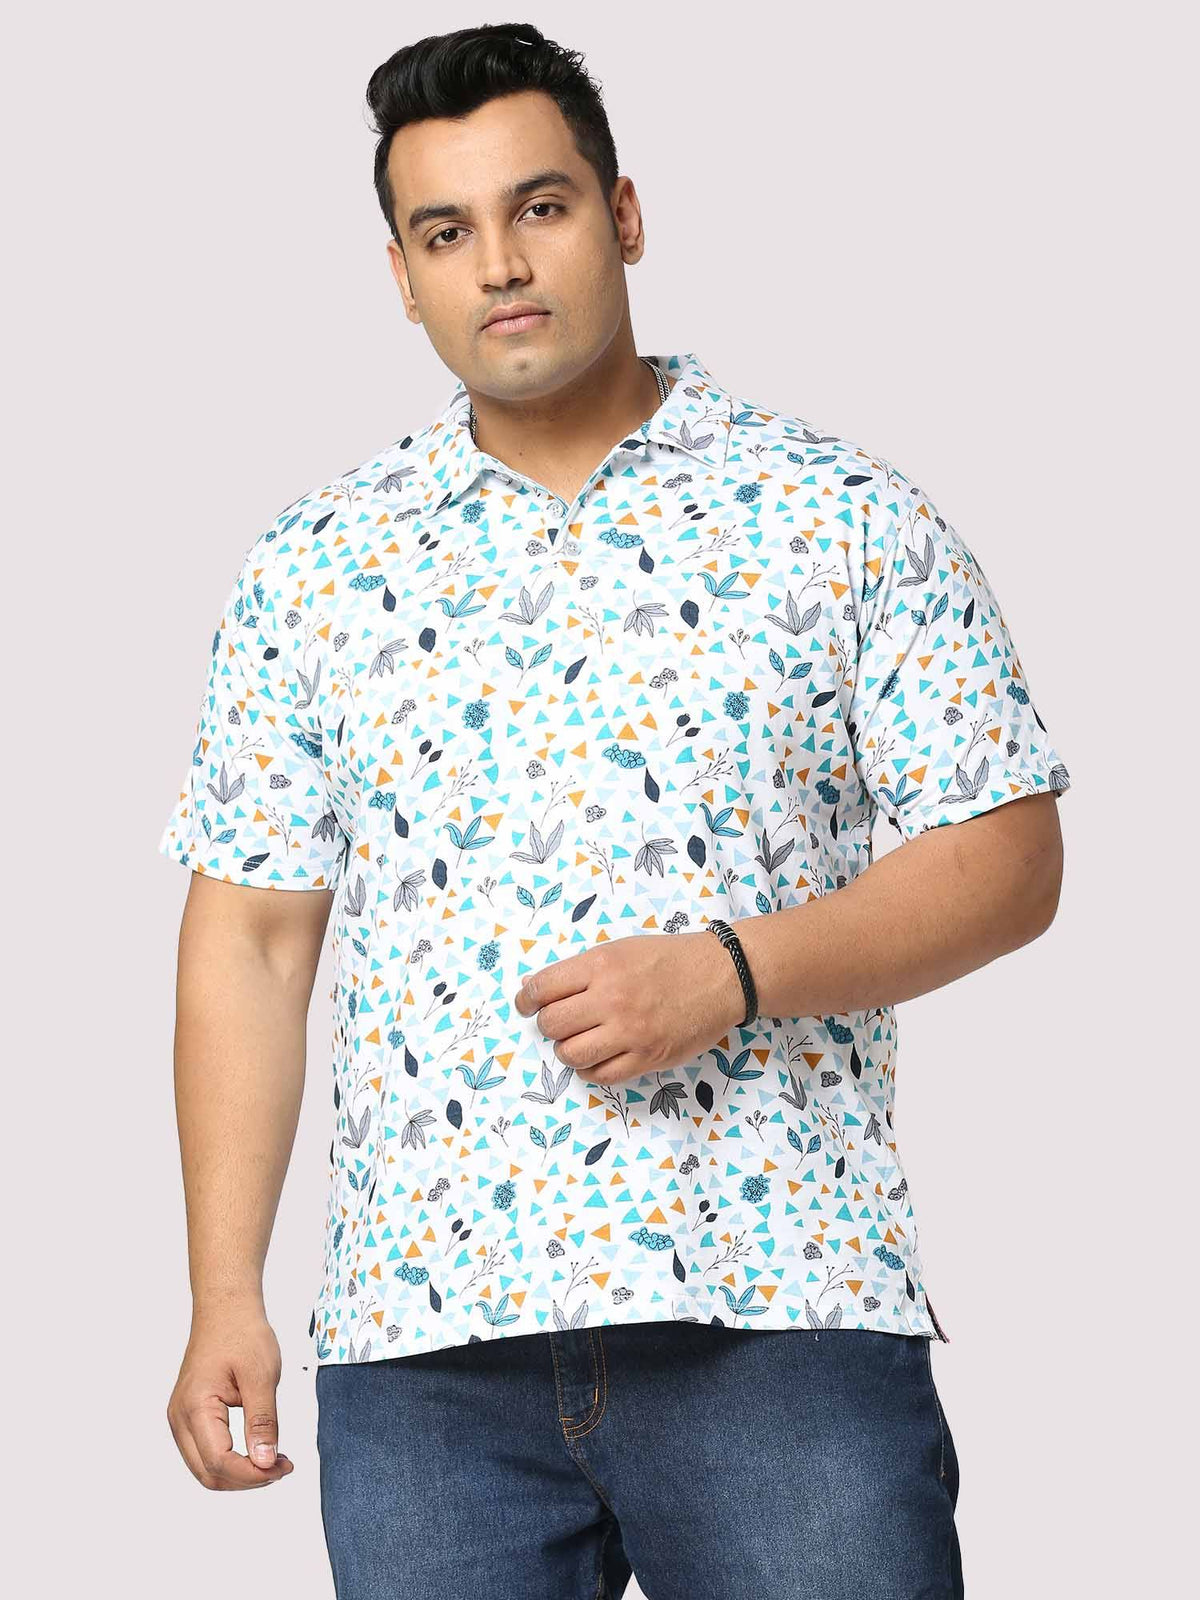 Guniaa Glider Digital Printed Half-Sleeves Shirt - Guniaa Fashions